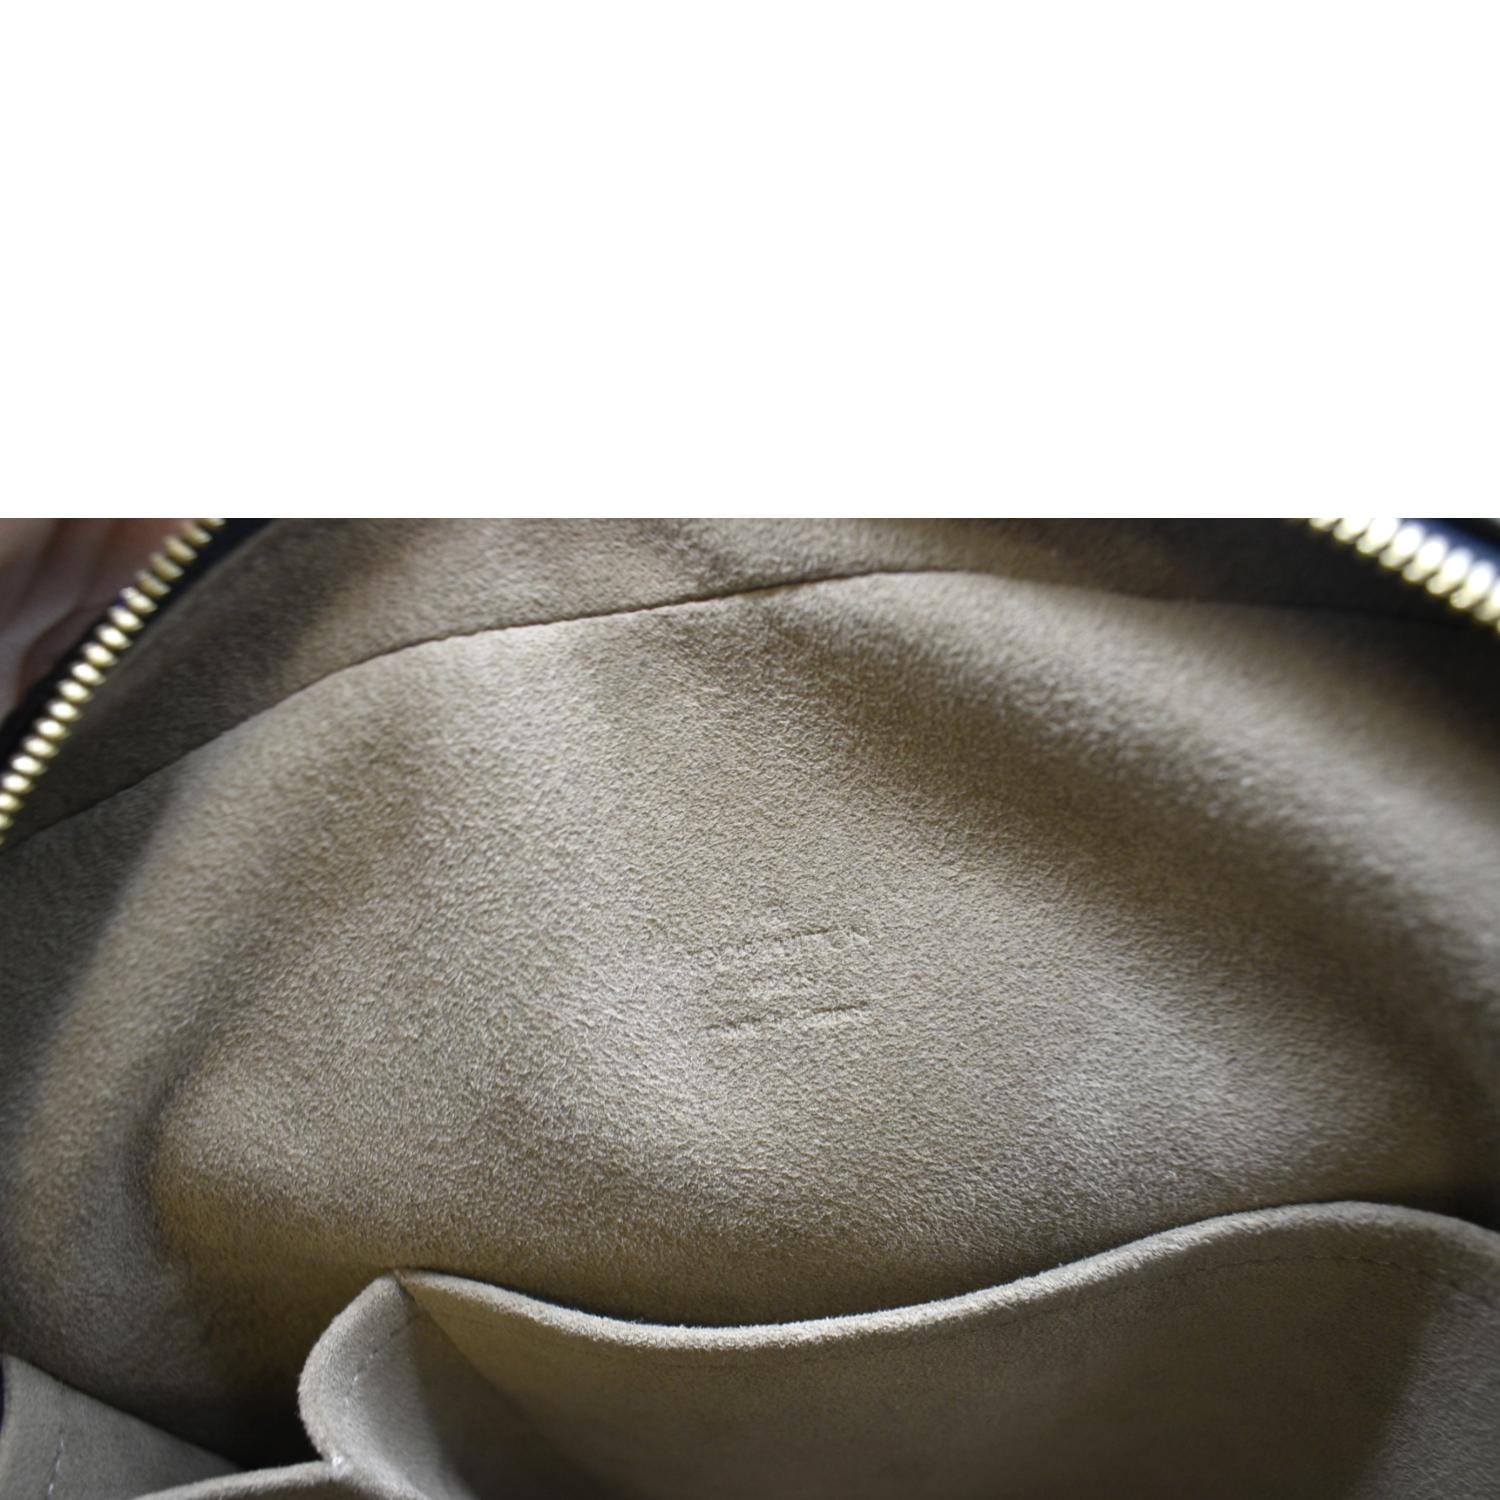 Louis Vuitton Trouville Handbag Monogram Multicolor - ShopStyle